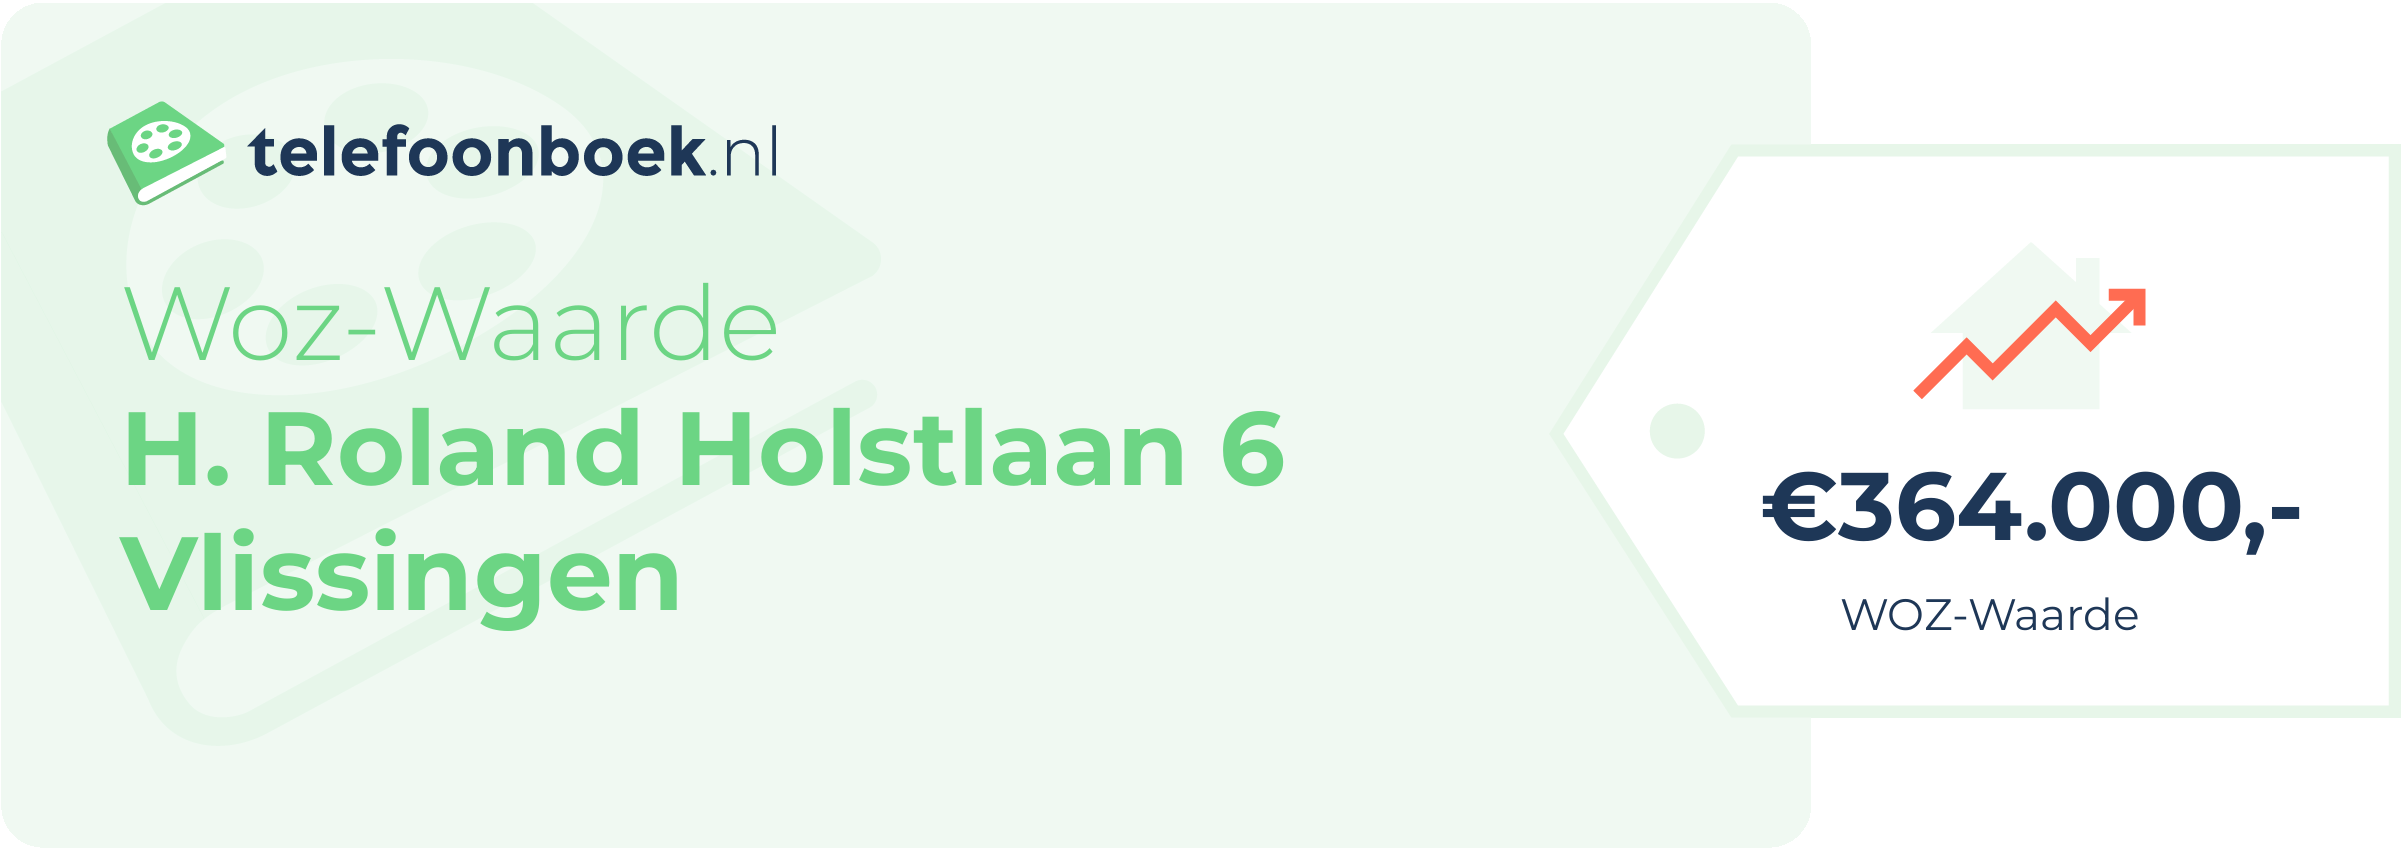 WOZ-waarde H. Roland Holstlaan 6 Vlissingen